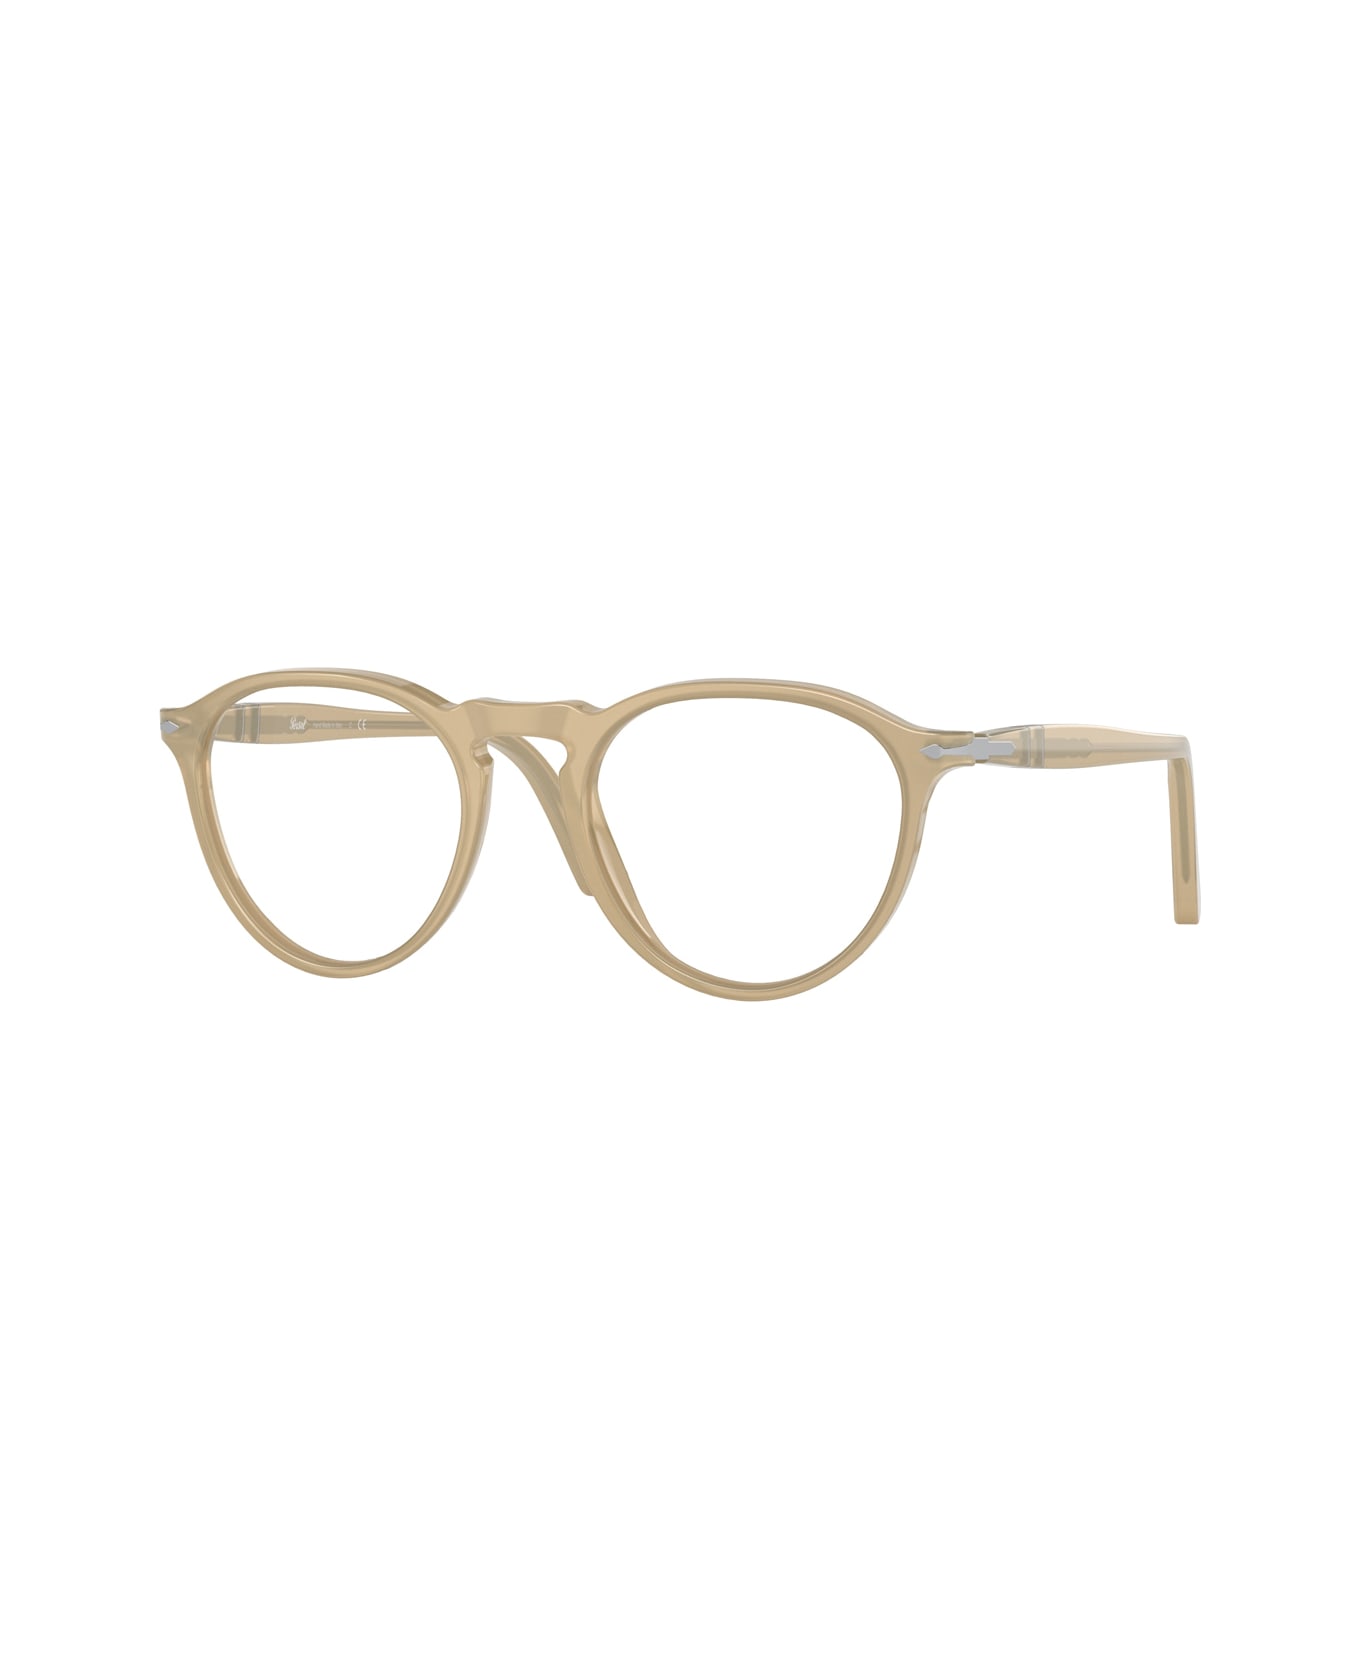 Persol Po3286v Glasses - Avorio